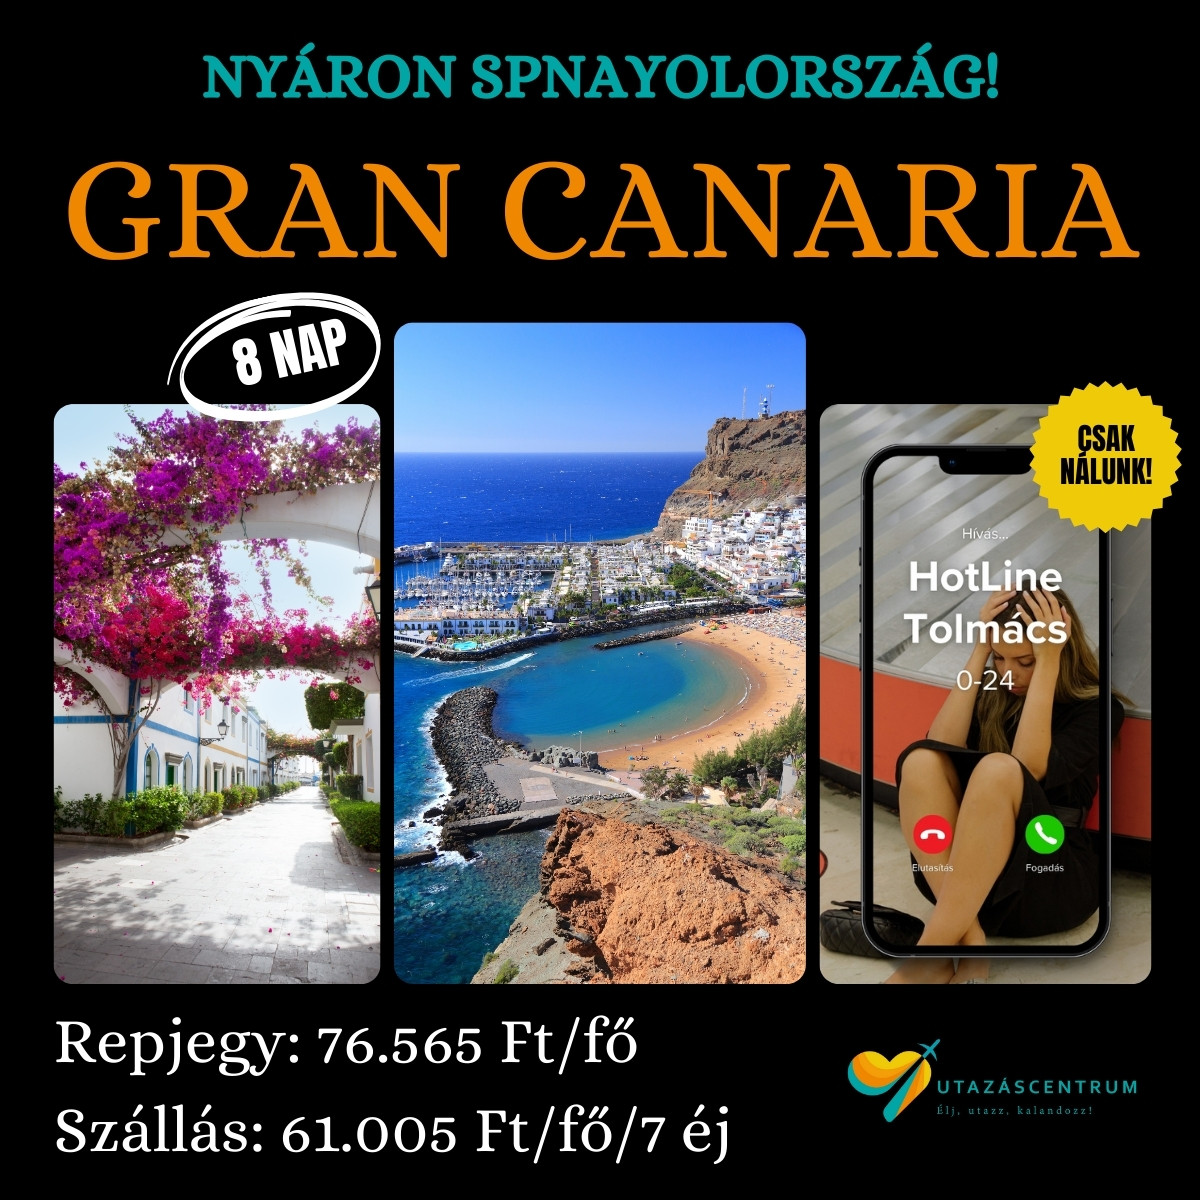 Gran Canaria Spanyolország Kanári szigetek nyaralás blog utazás üdülés utazáscentrum szállás városlátogatás